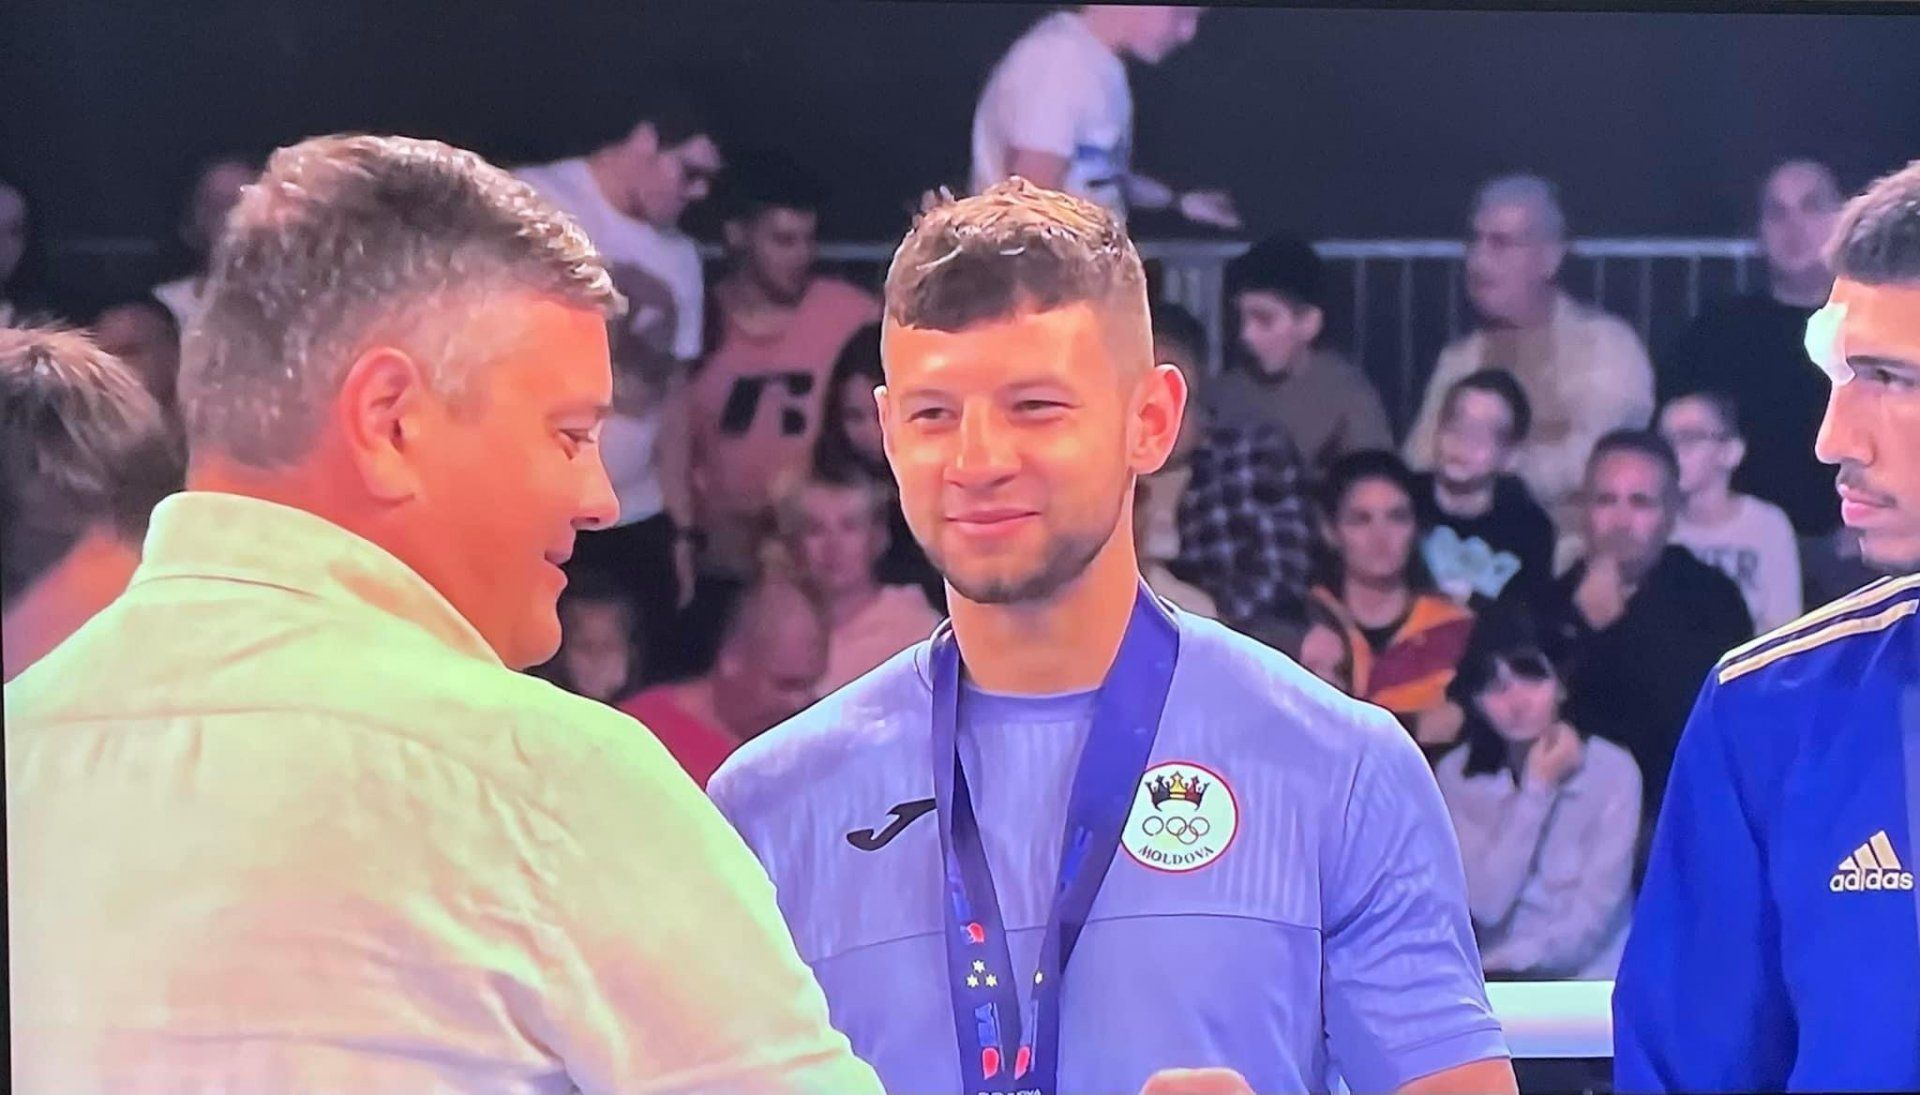 Pugilistul moldovean Alexandru Paraschiv a reușit să ajungă în finala Cupei Europei la box